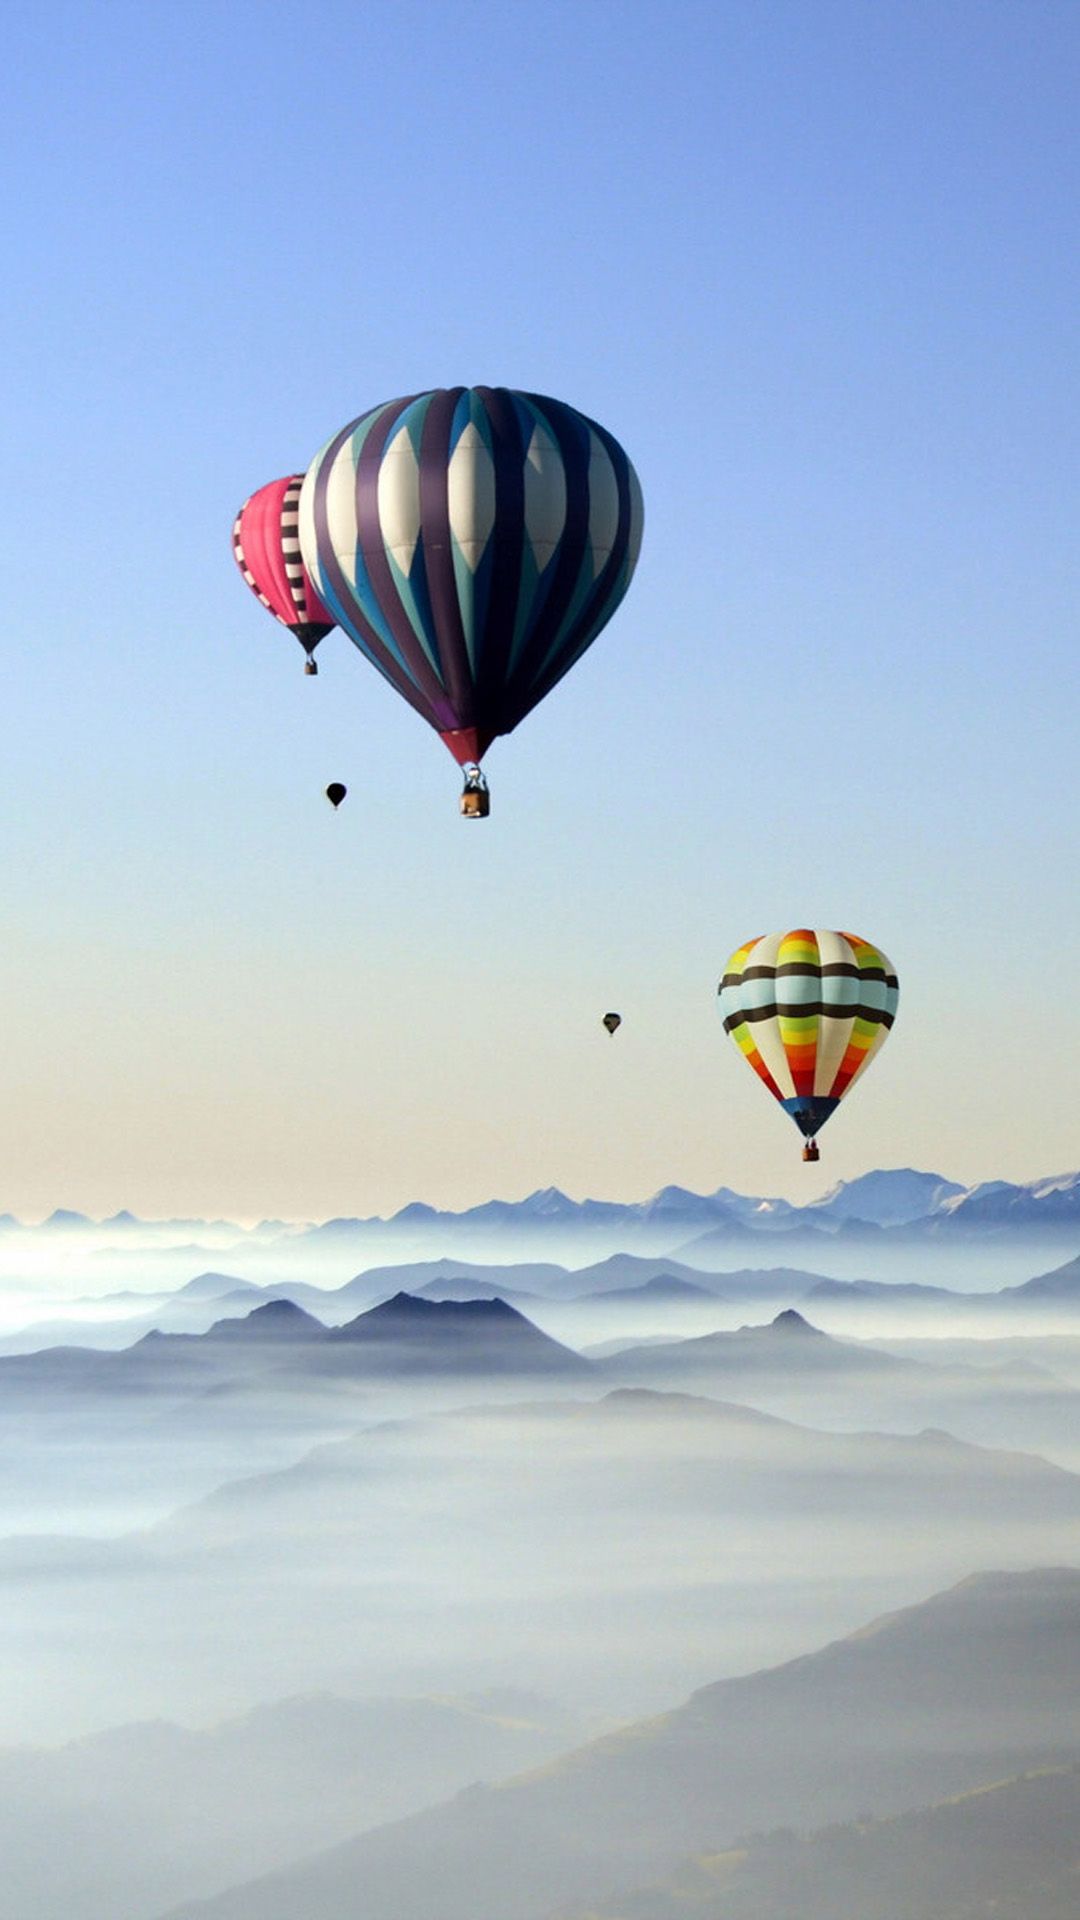 Descargar Rare Scenic Hot Air Balloon iPhone 8 fondos de pantalla gratis